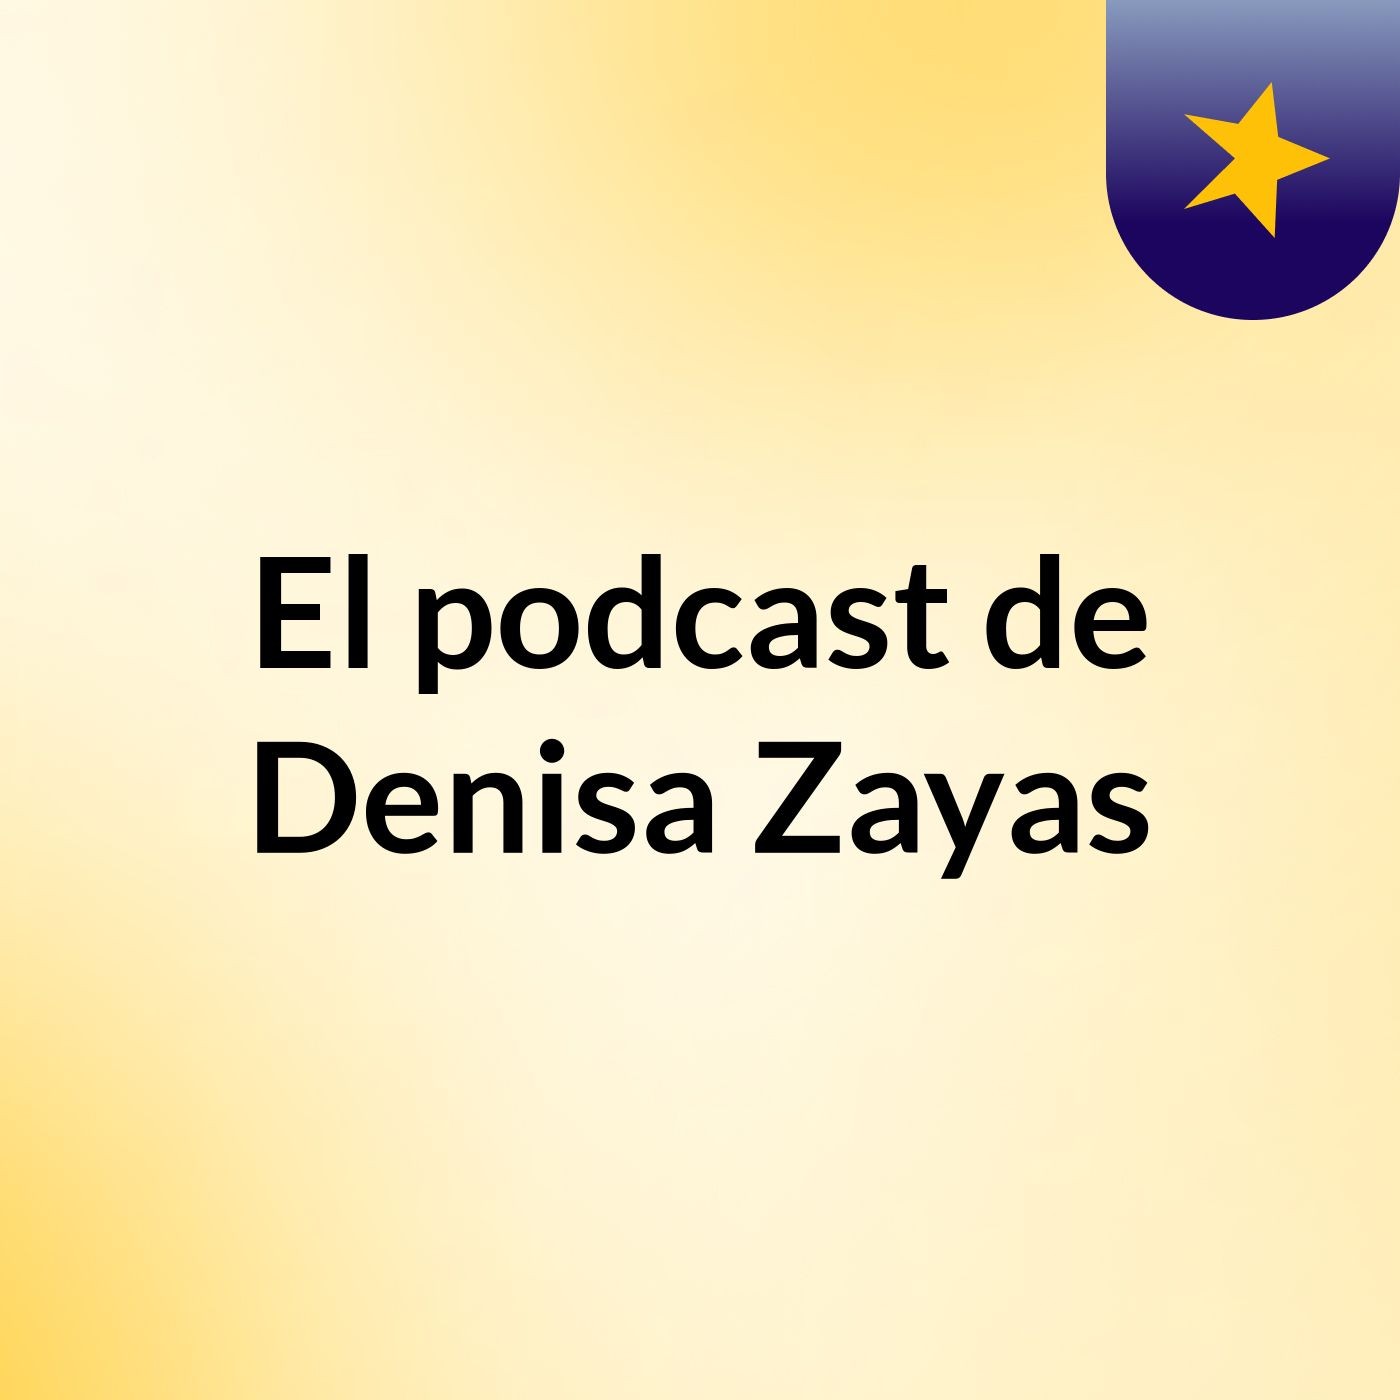 El podcast de Denisa Zayas